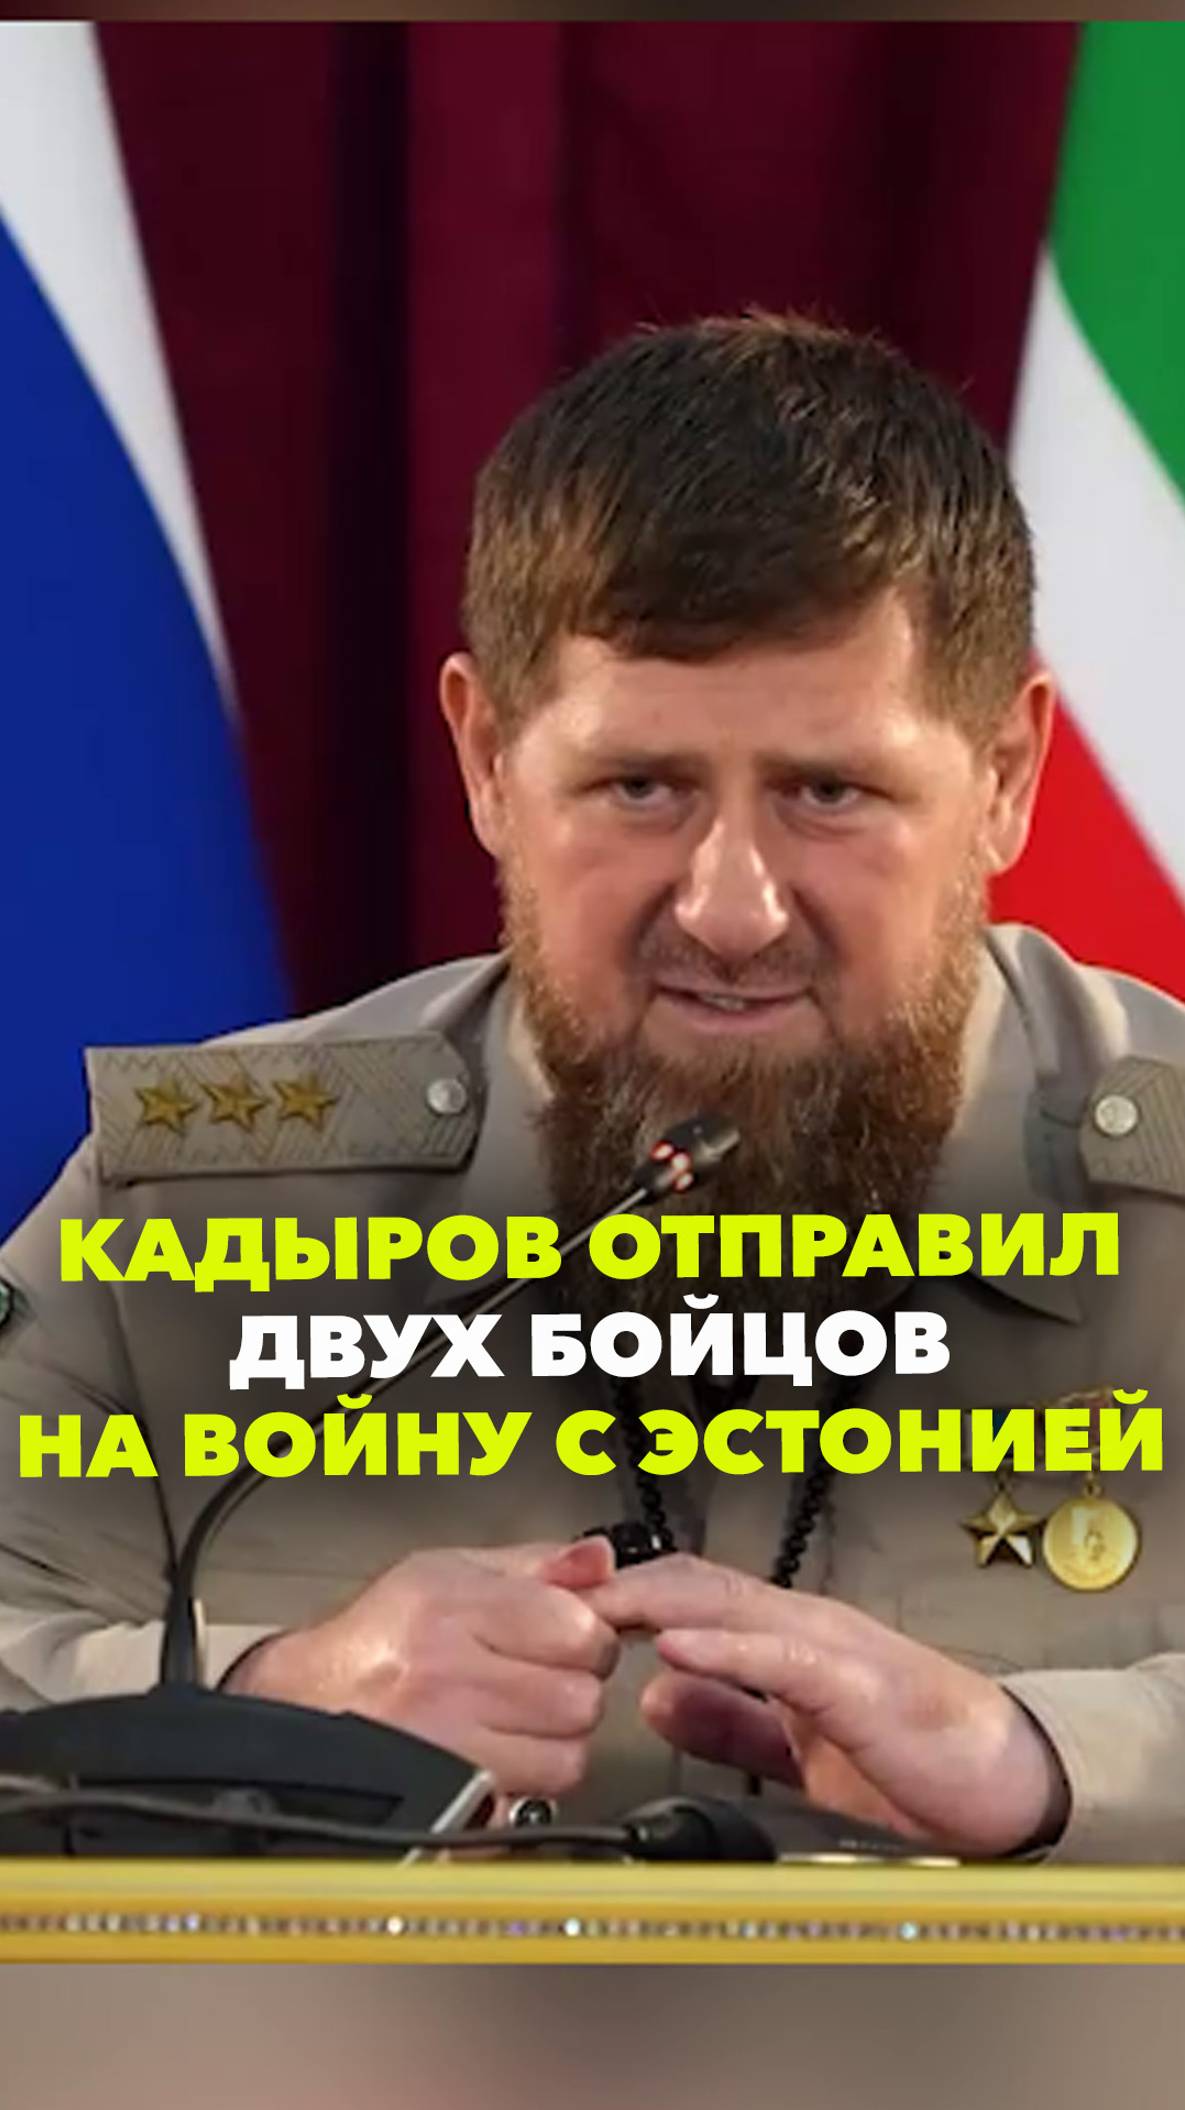 Кадыров поручил отправить двух раненых солдат «в сторону эстонских войск». Мол, даже они справятся